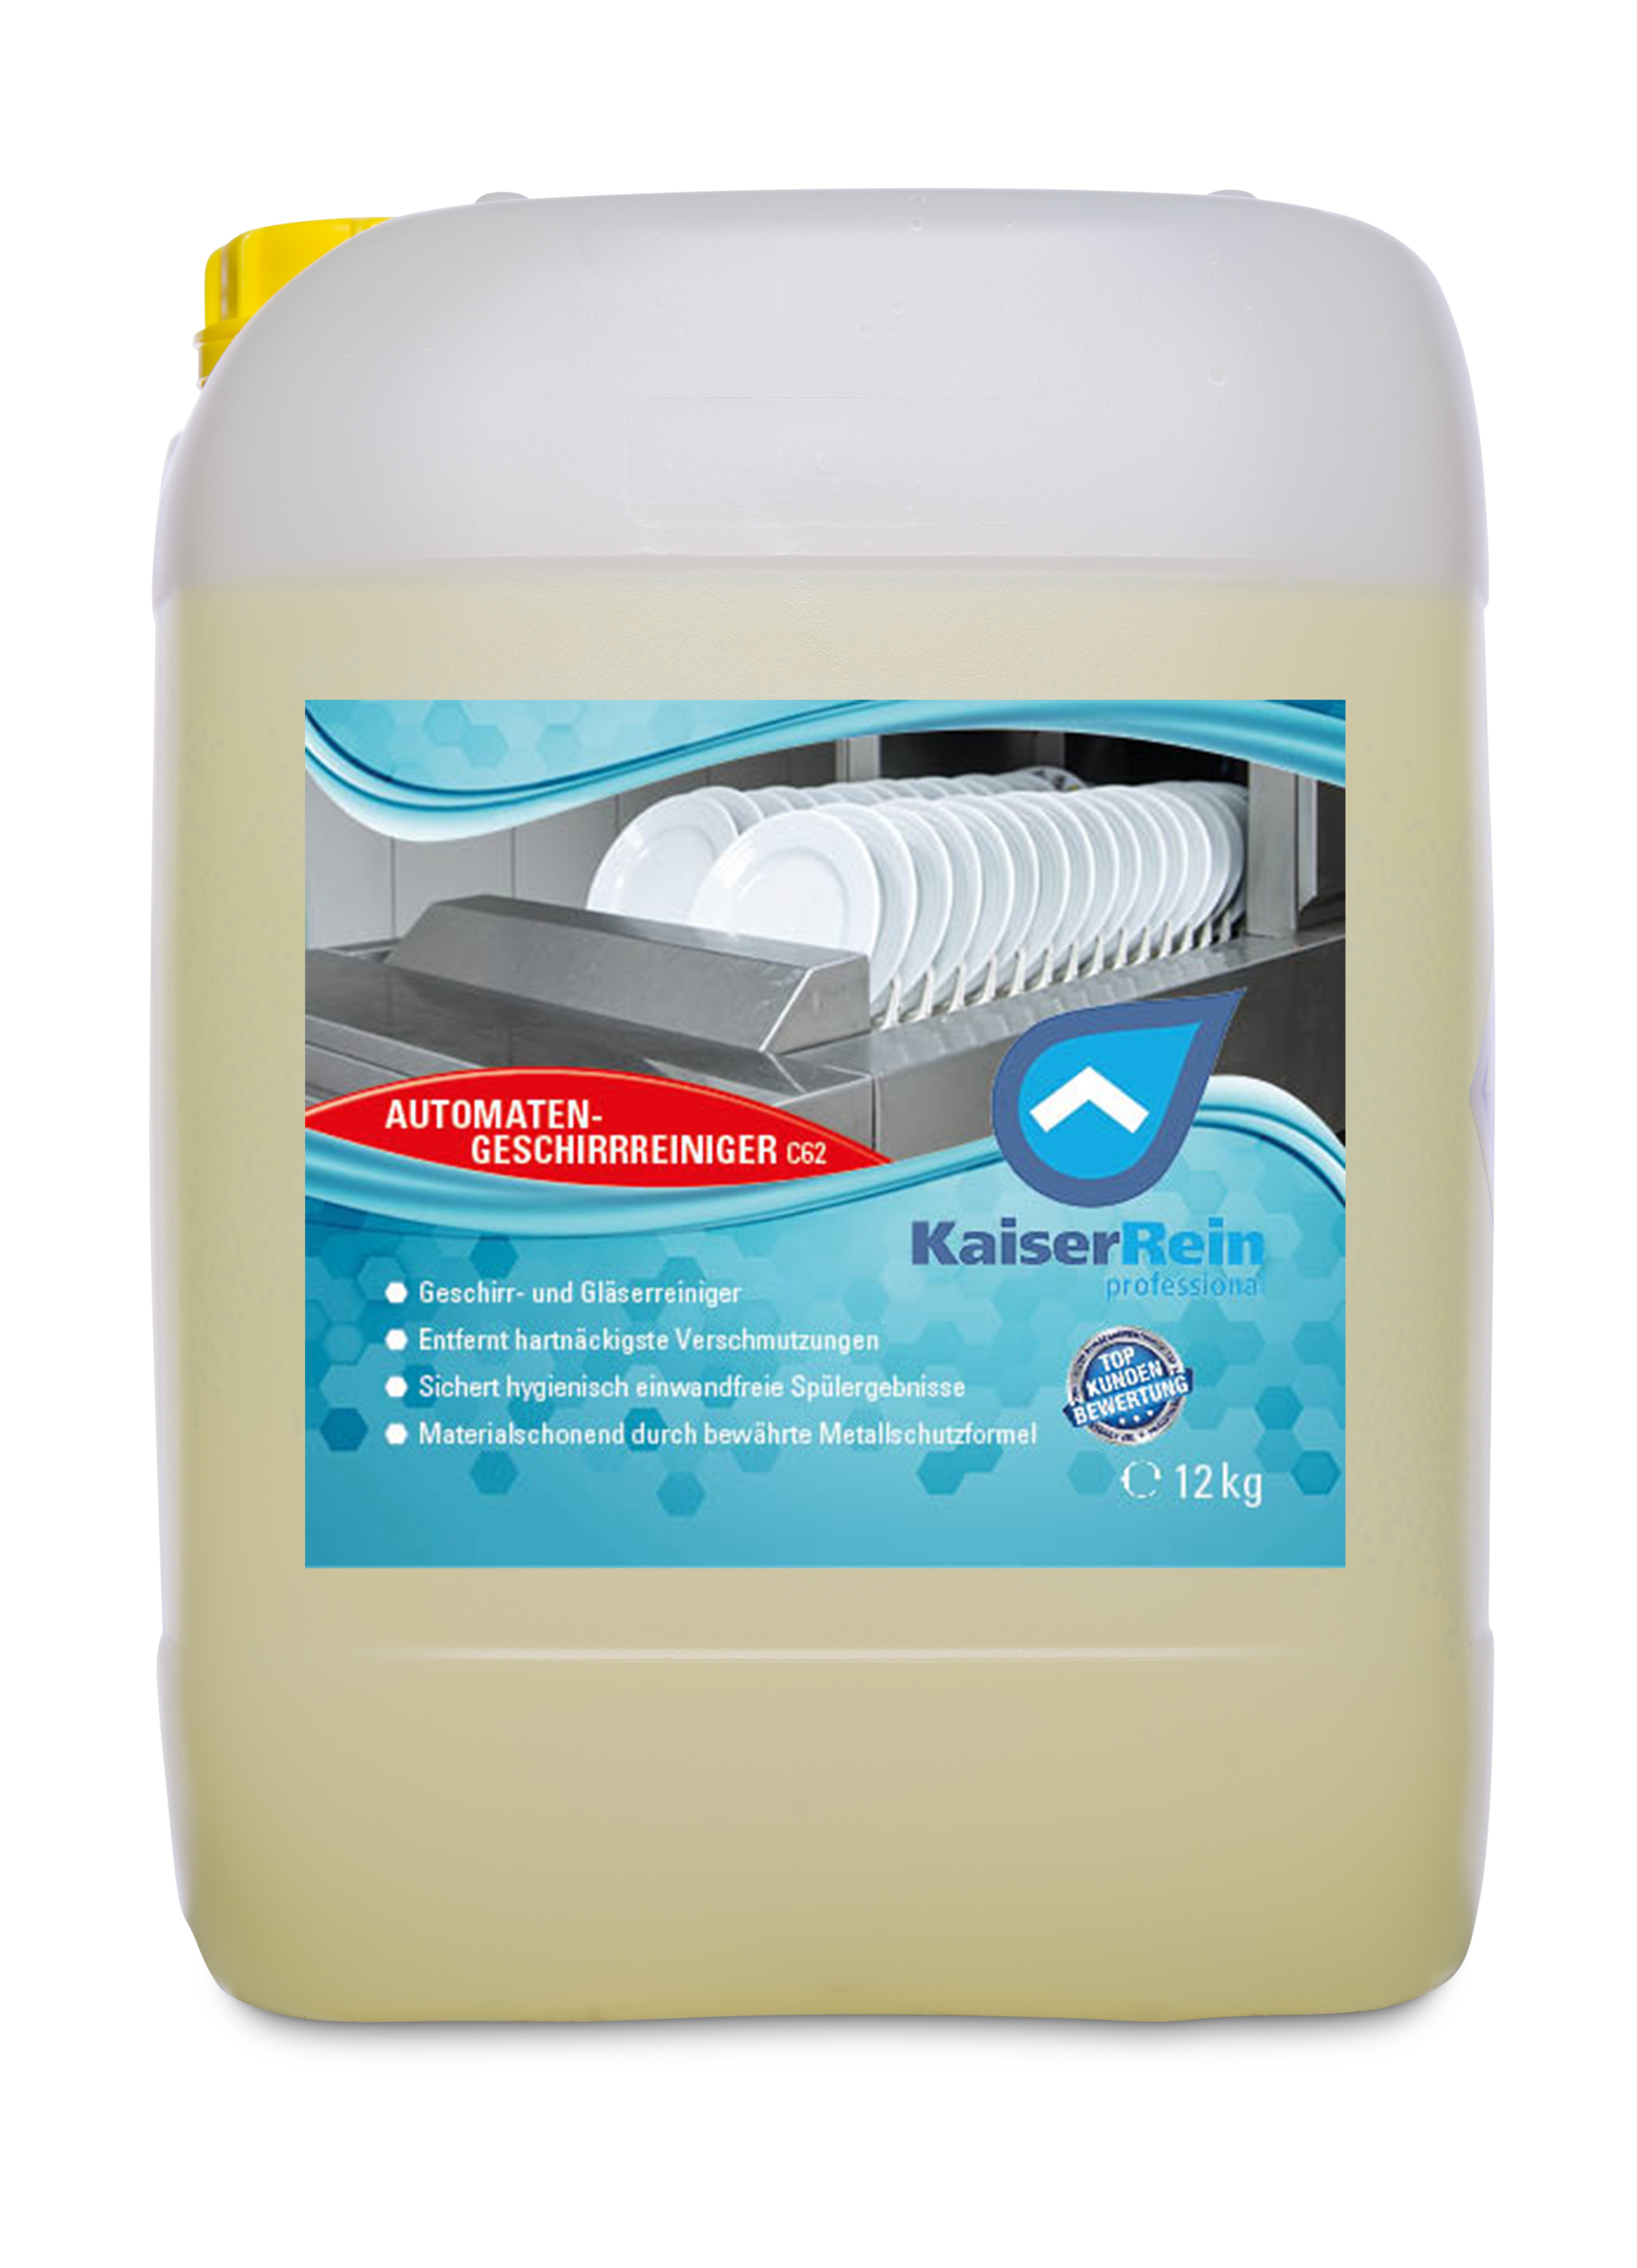 Geschirreiniger & Gläserreiniger C62 Gewerblich flüssig  für Spülmaschinen Automaten 12 kg (10l)